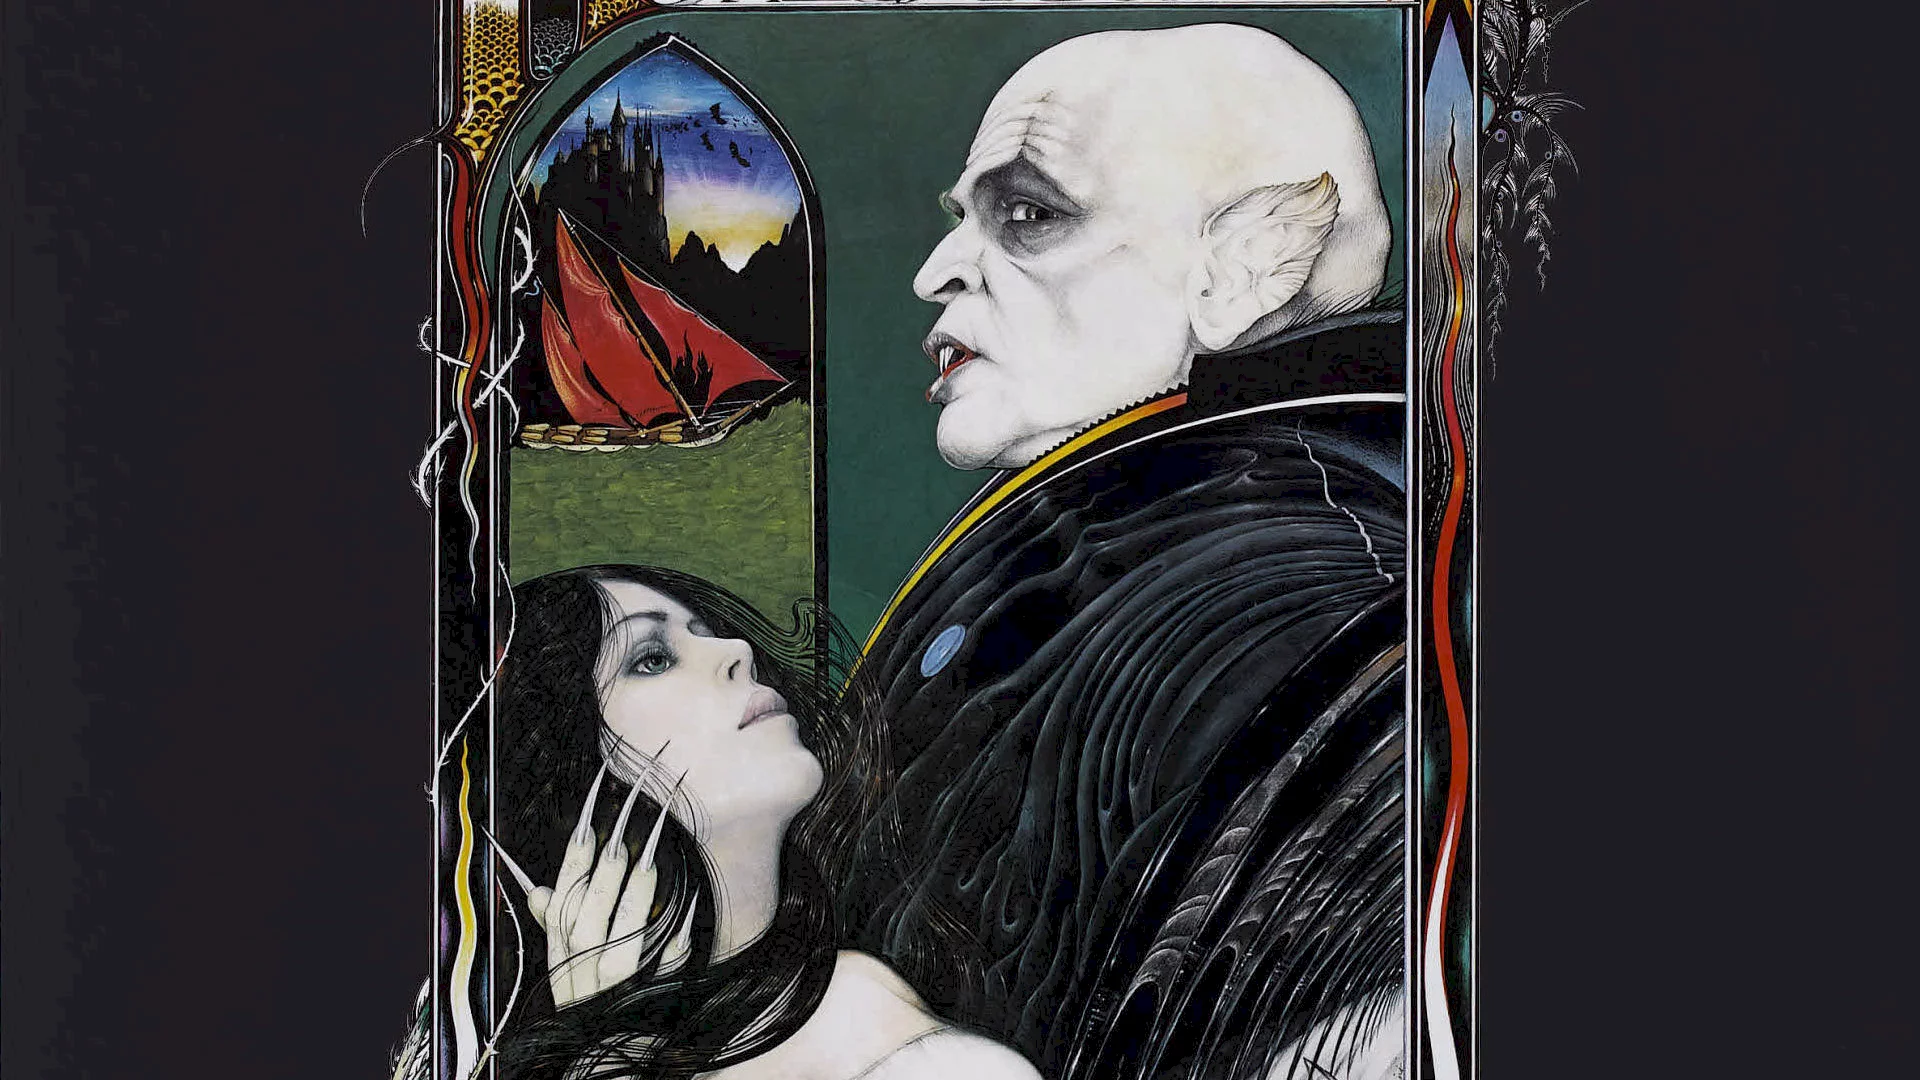 Photo du film : Nosferatu fantome de la nuit